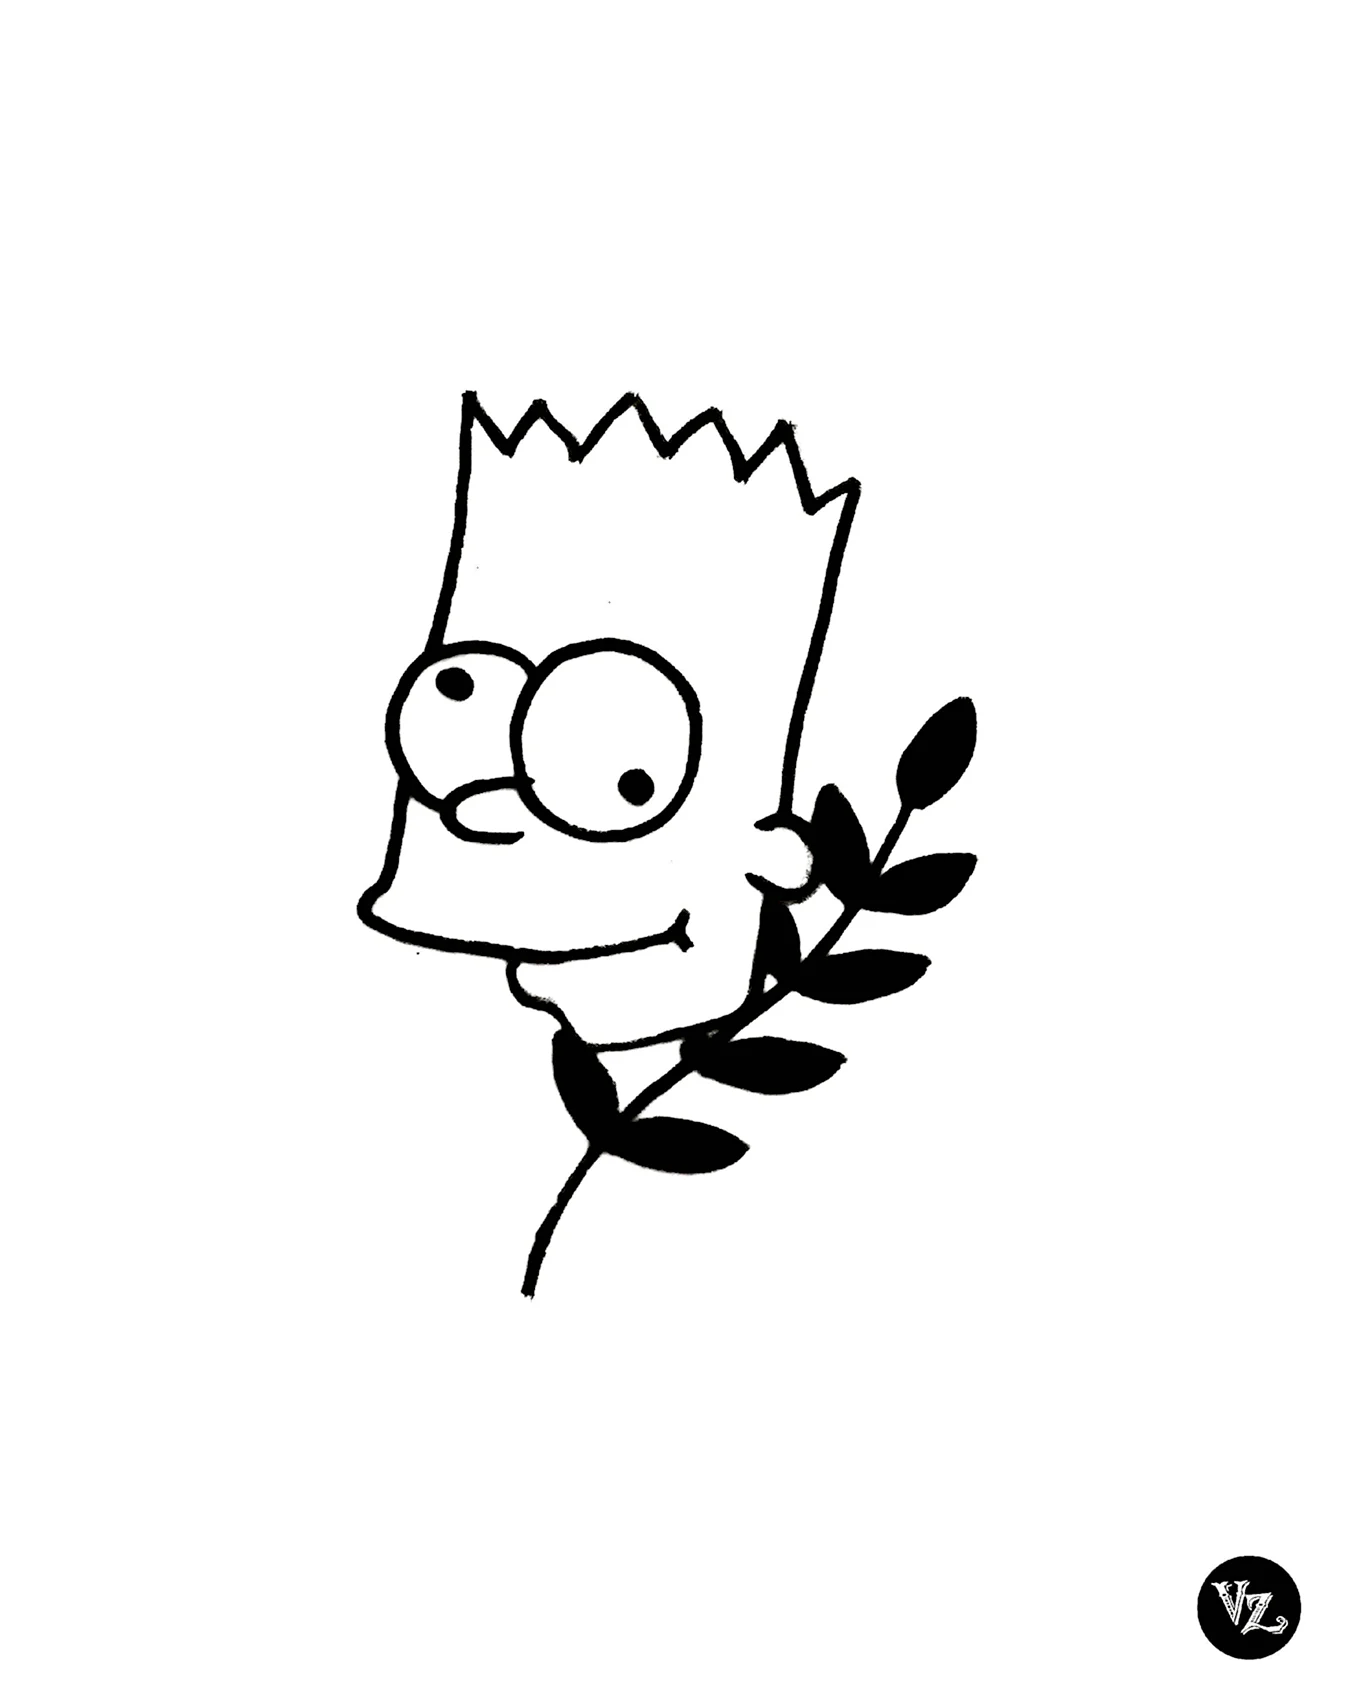 Барт симпсон рисунок маленький. Для срисовки